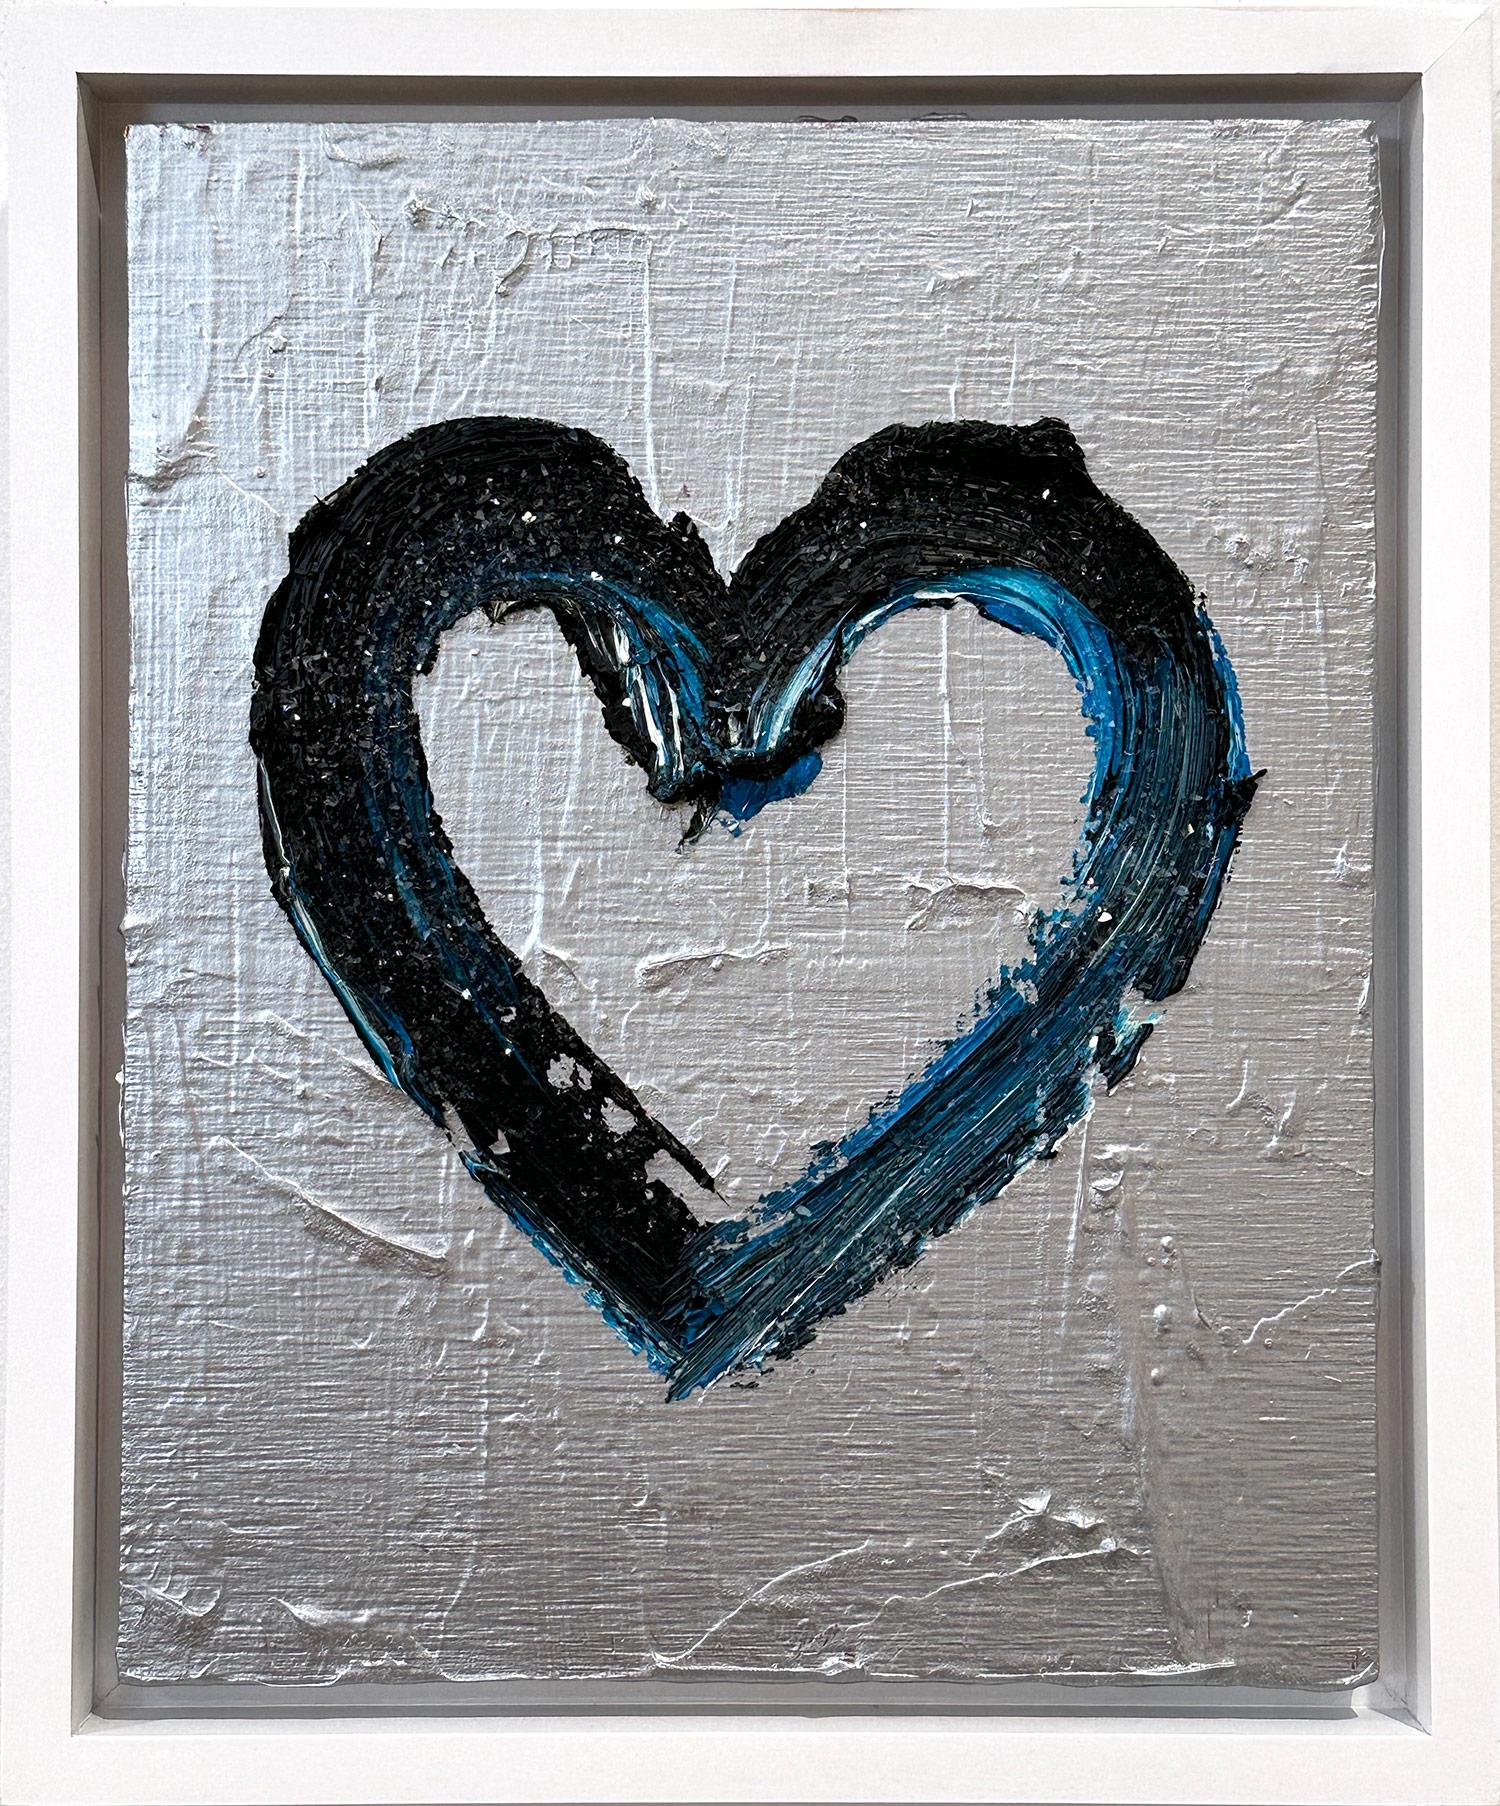 Cindy Shaoul Figurative Painting – "My Paris at Night Heart" Zeitgenössisches Pop Art Silber Ölgemälde mit Wasseroberfläche 